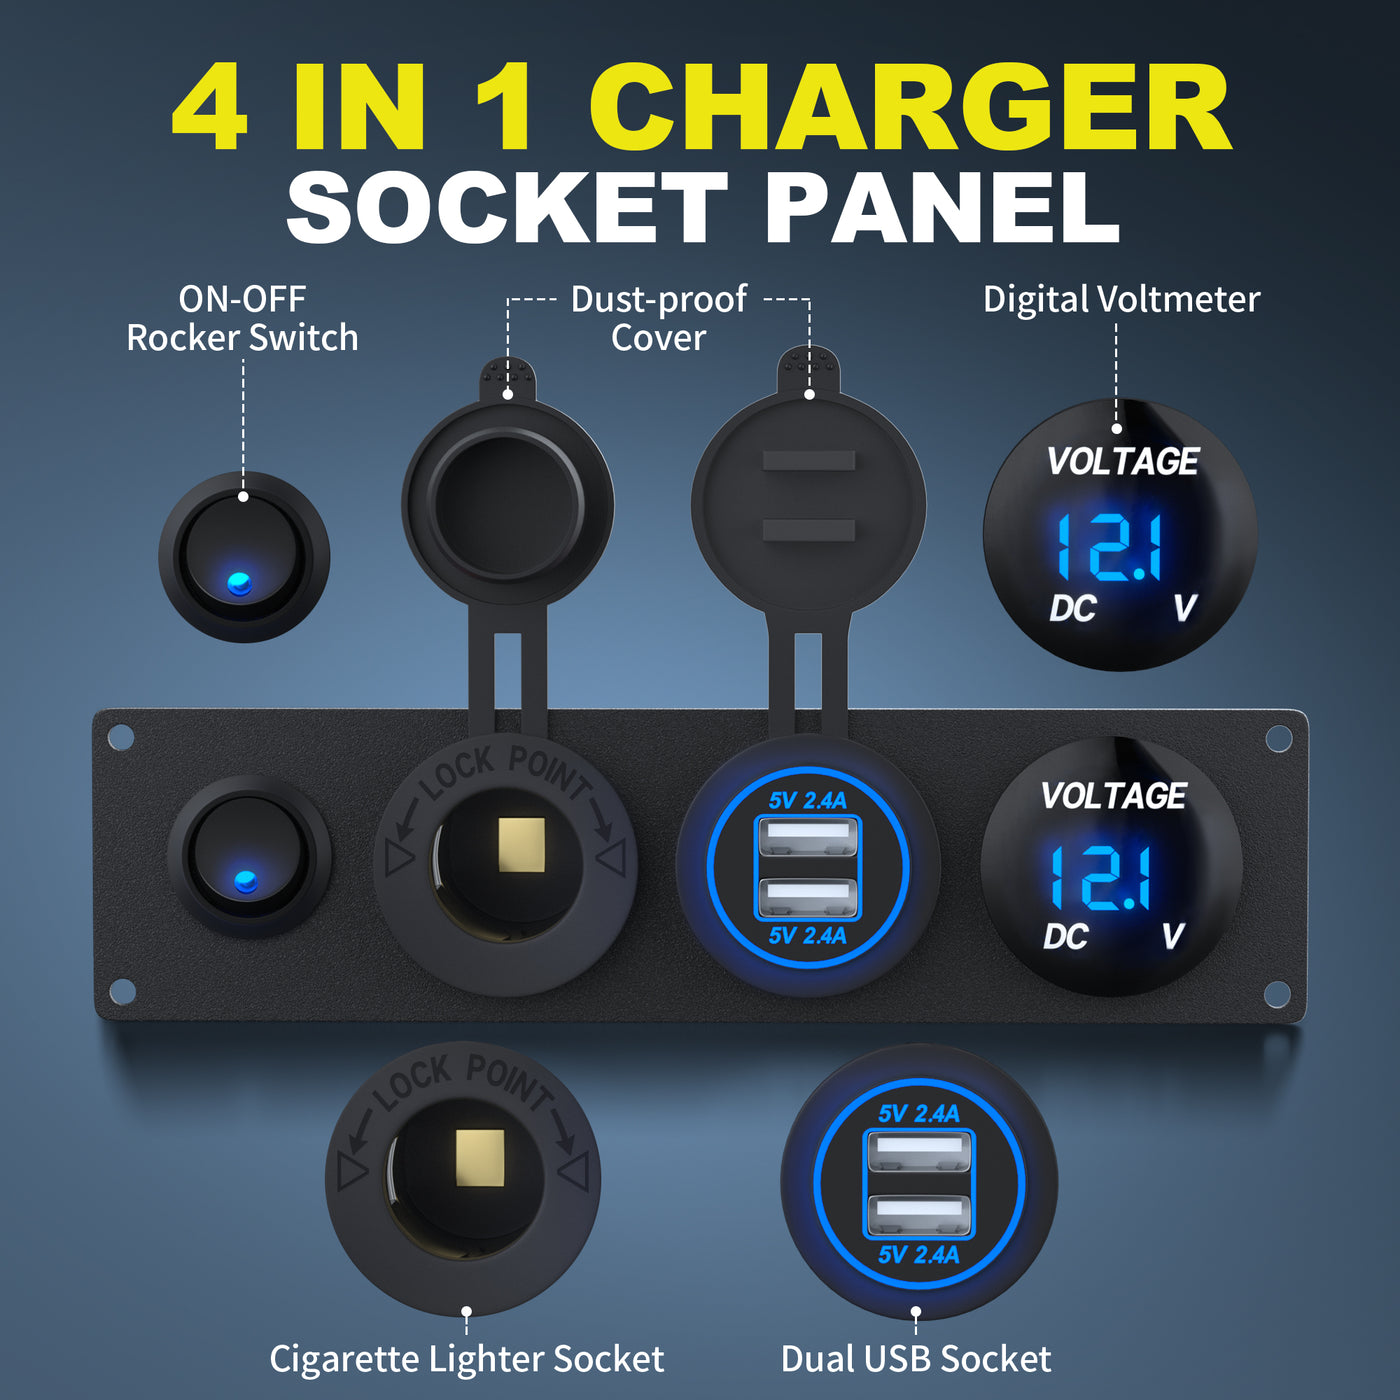 4 in 1 Charger Socket Panel with Dual USB Socket Voltmeter 12V Outlet - DAIER